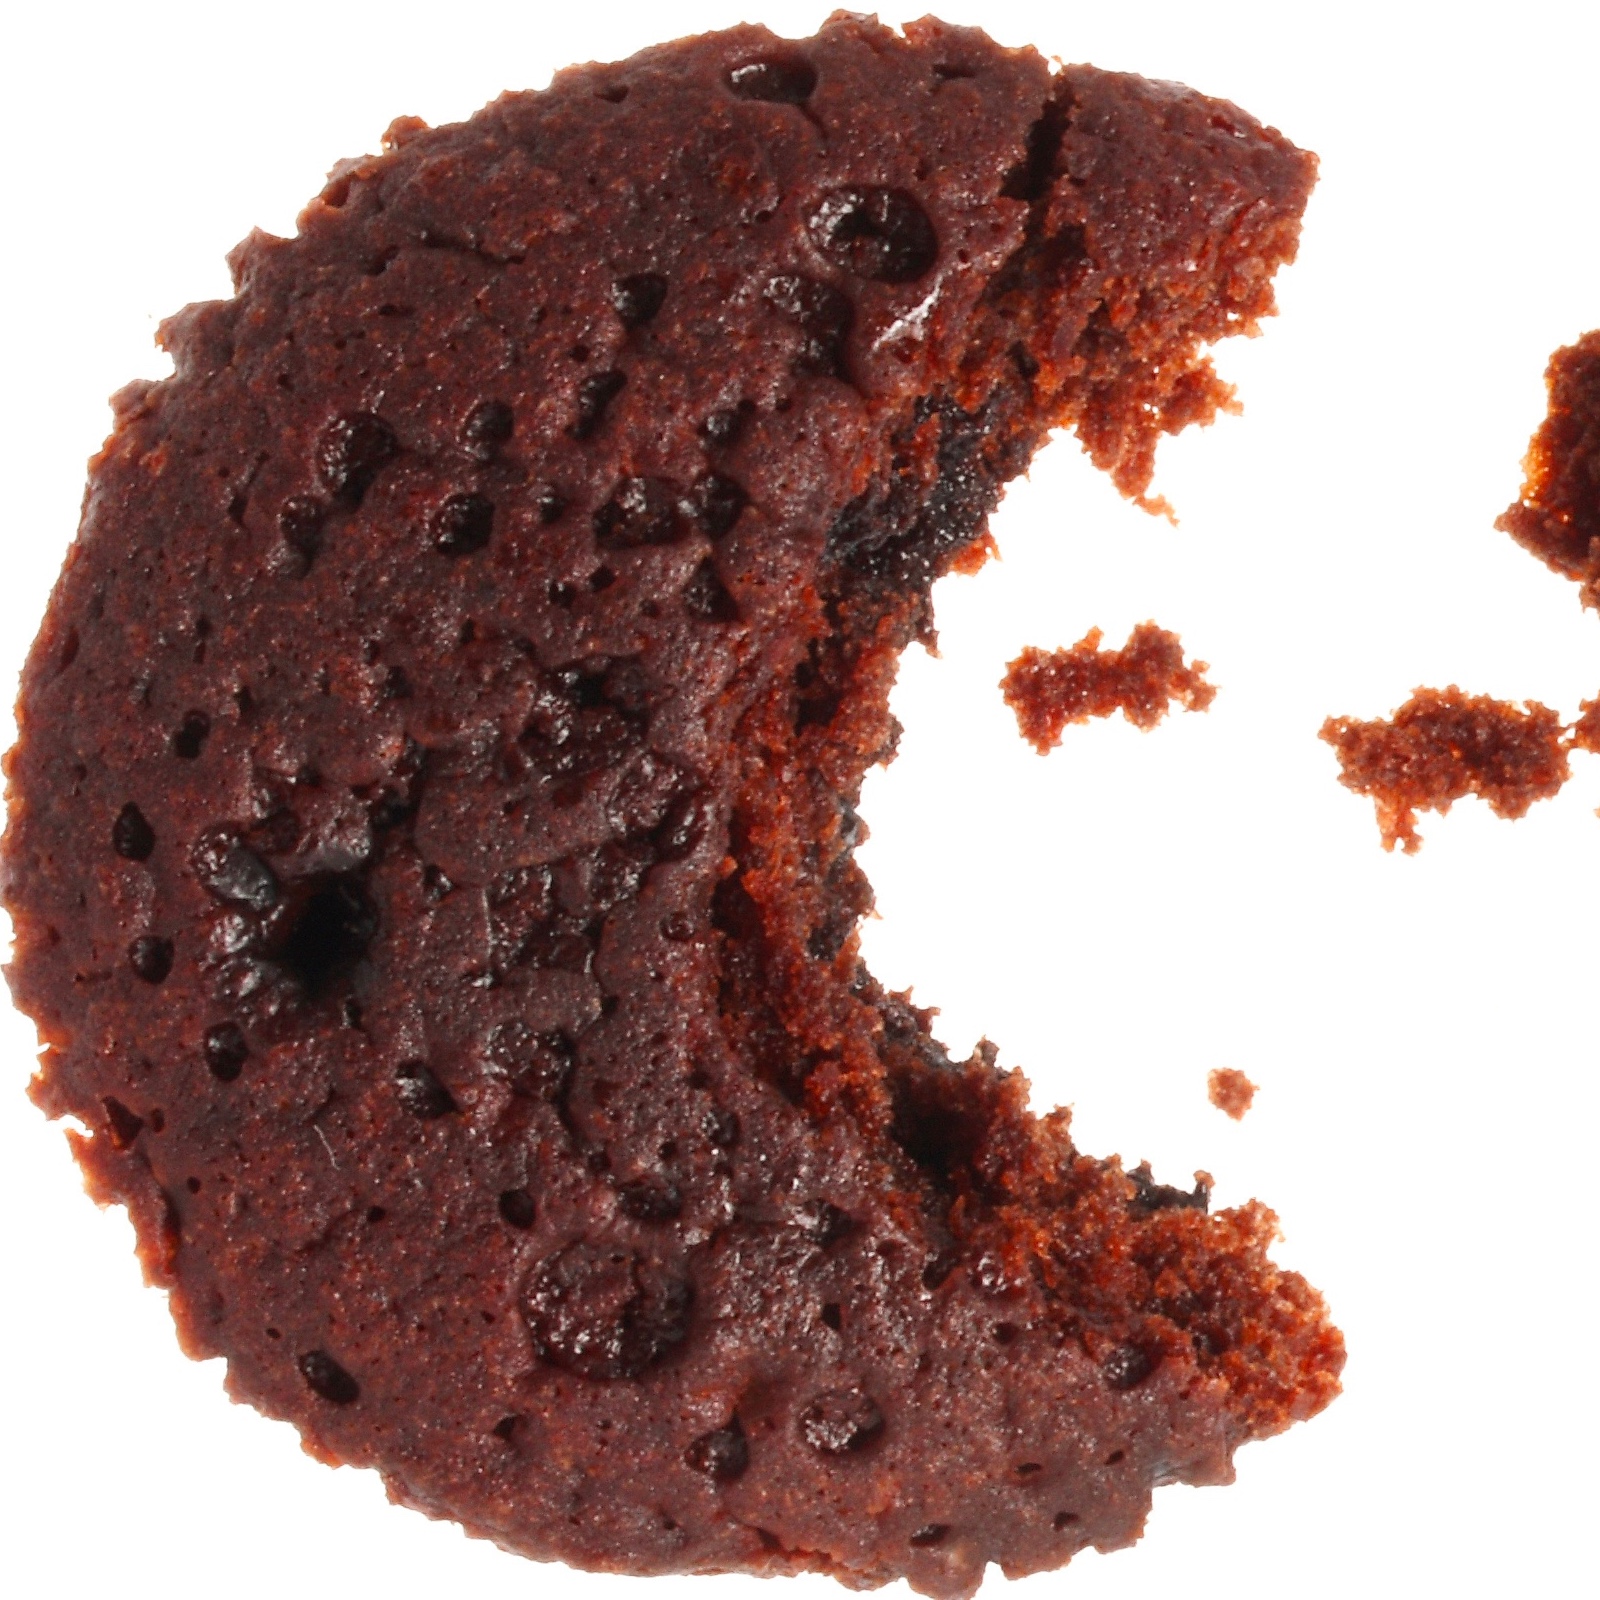 Foto: Mondsichel-förmiges Cookie (Plätzchen), das Krümel zu essen scheint und damit an Pacman erinnert